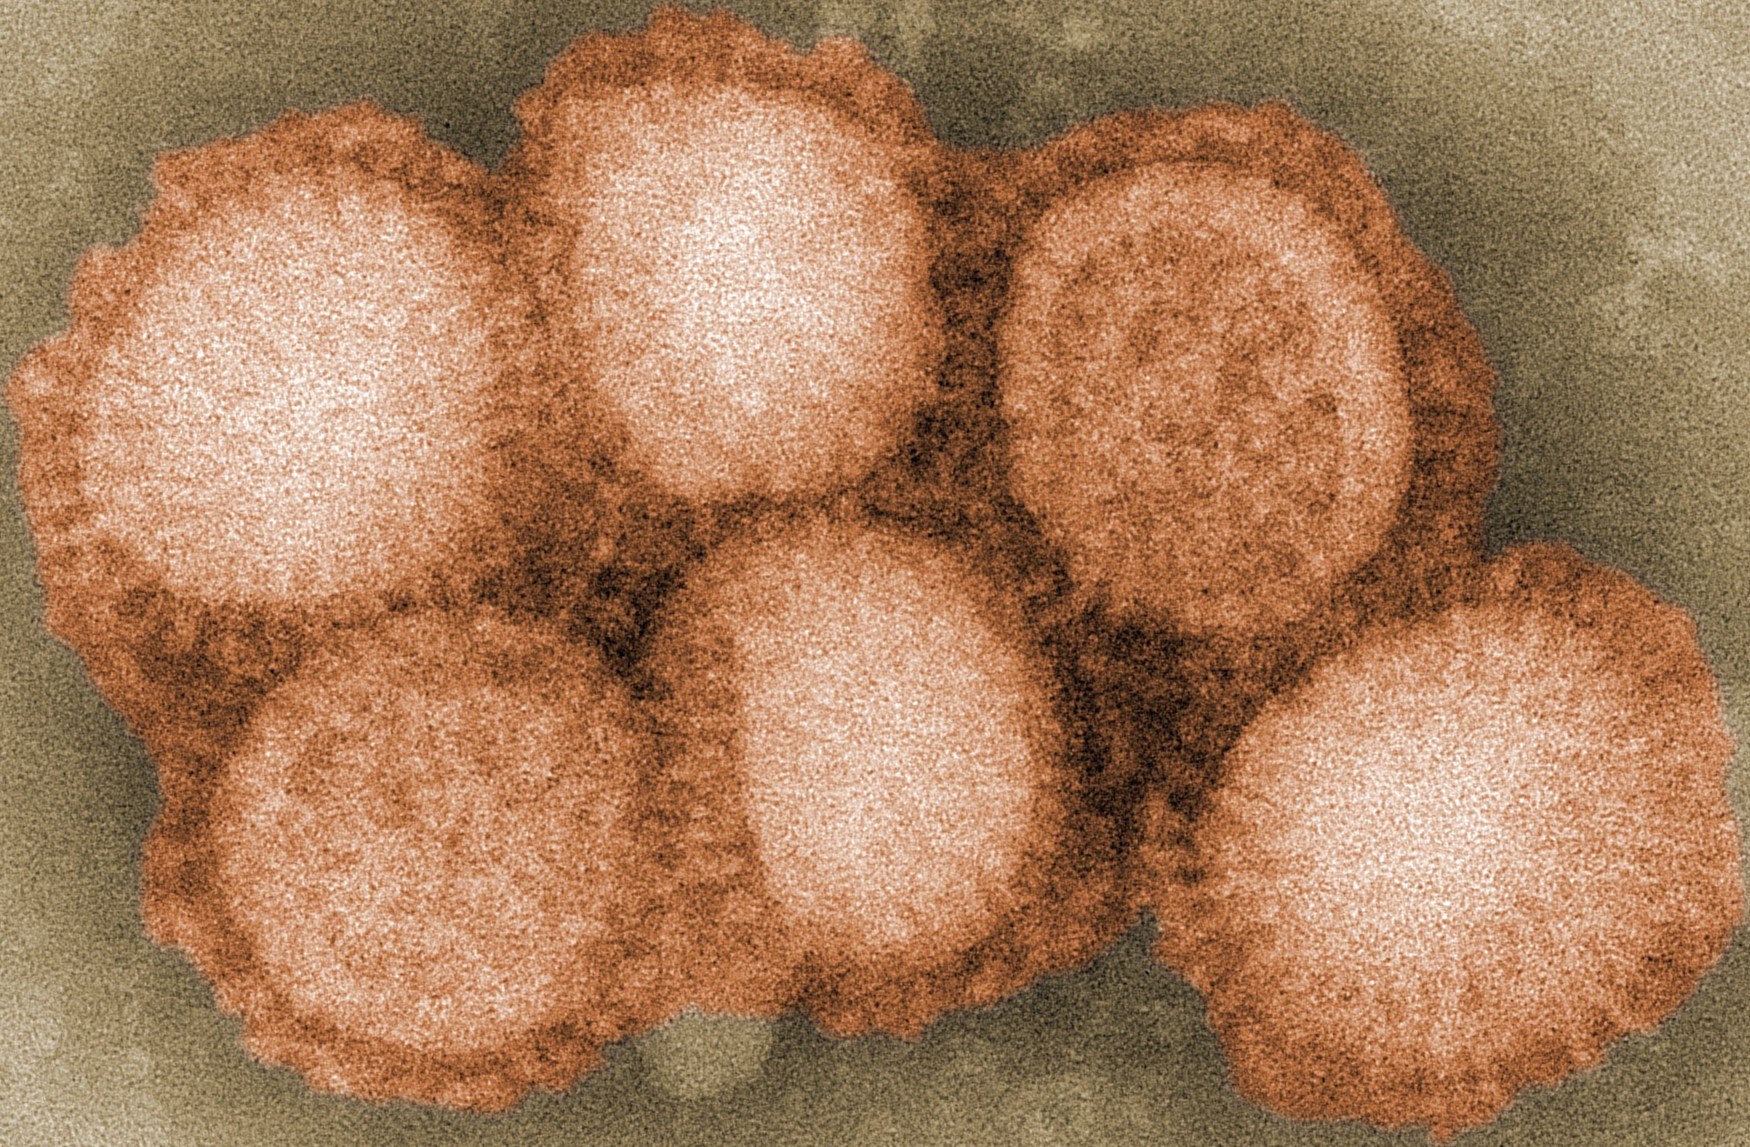 H1N1_navbox